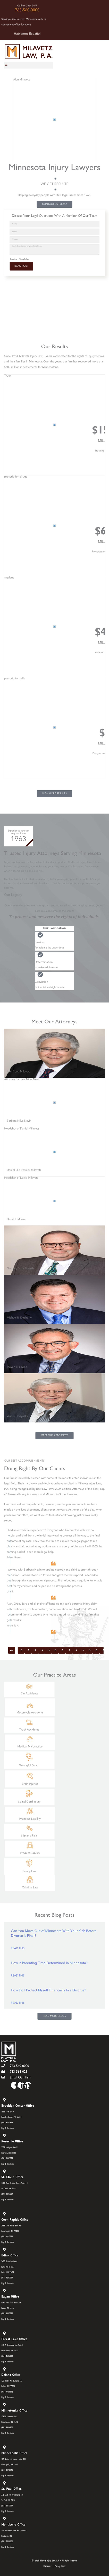 Milavetz, Gallop & Milavetz, P.A. - Eagan MN Lawyers